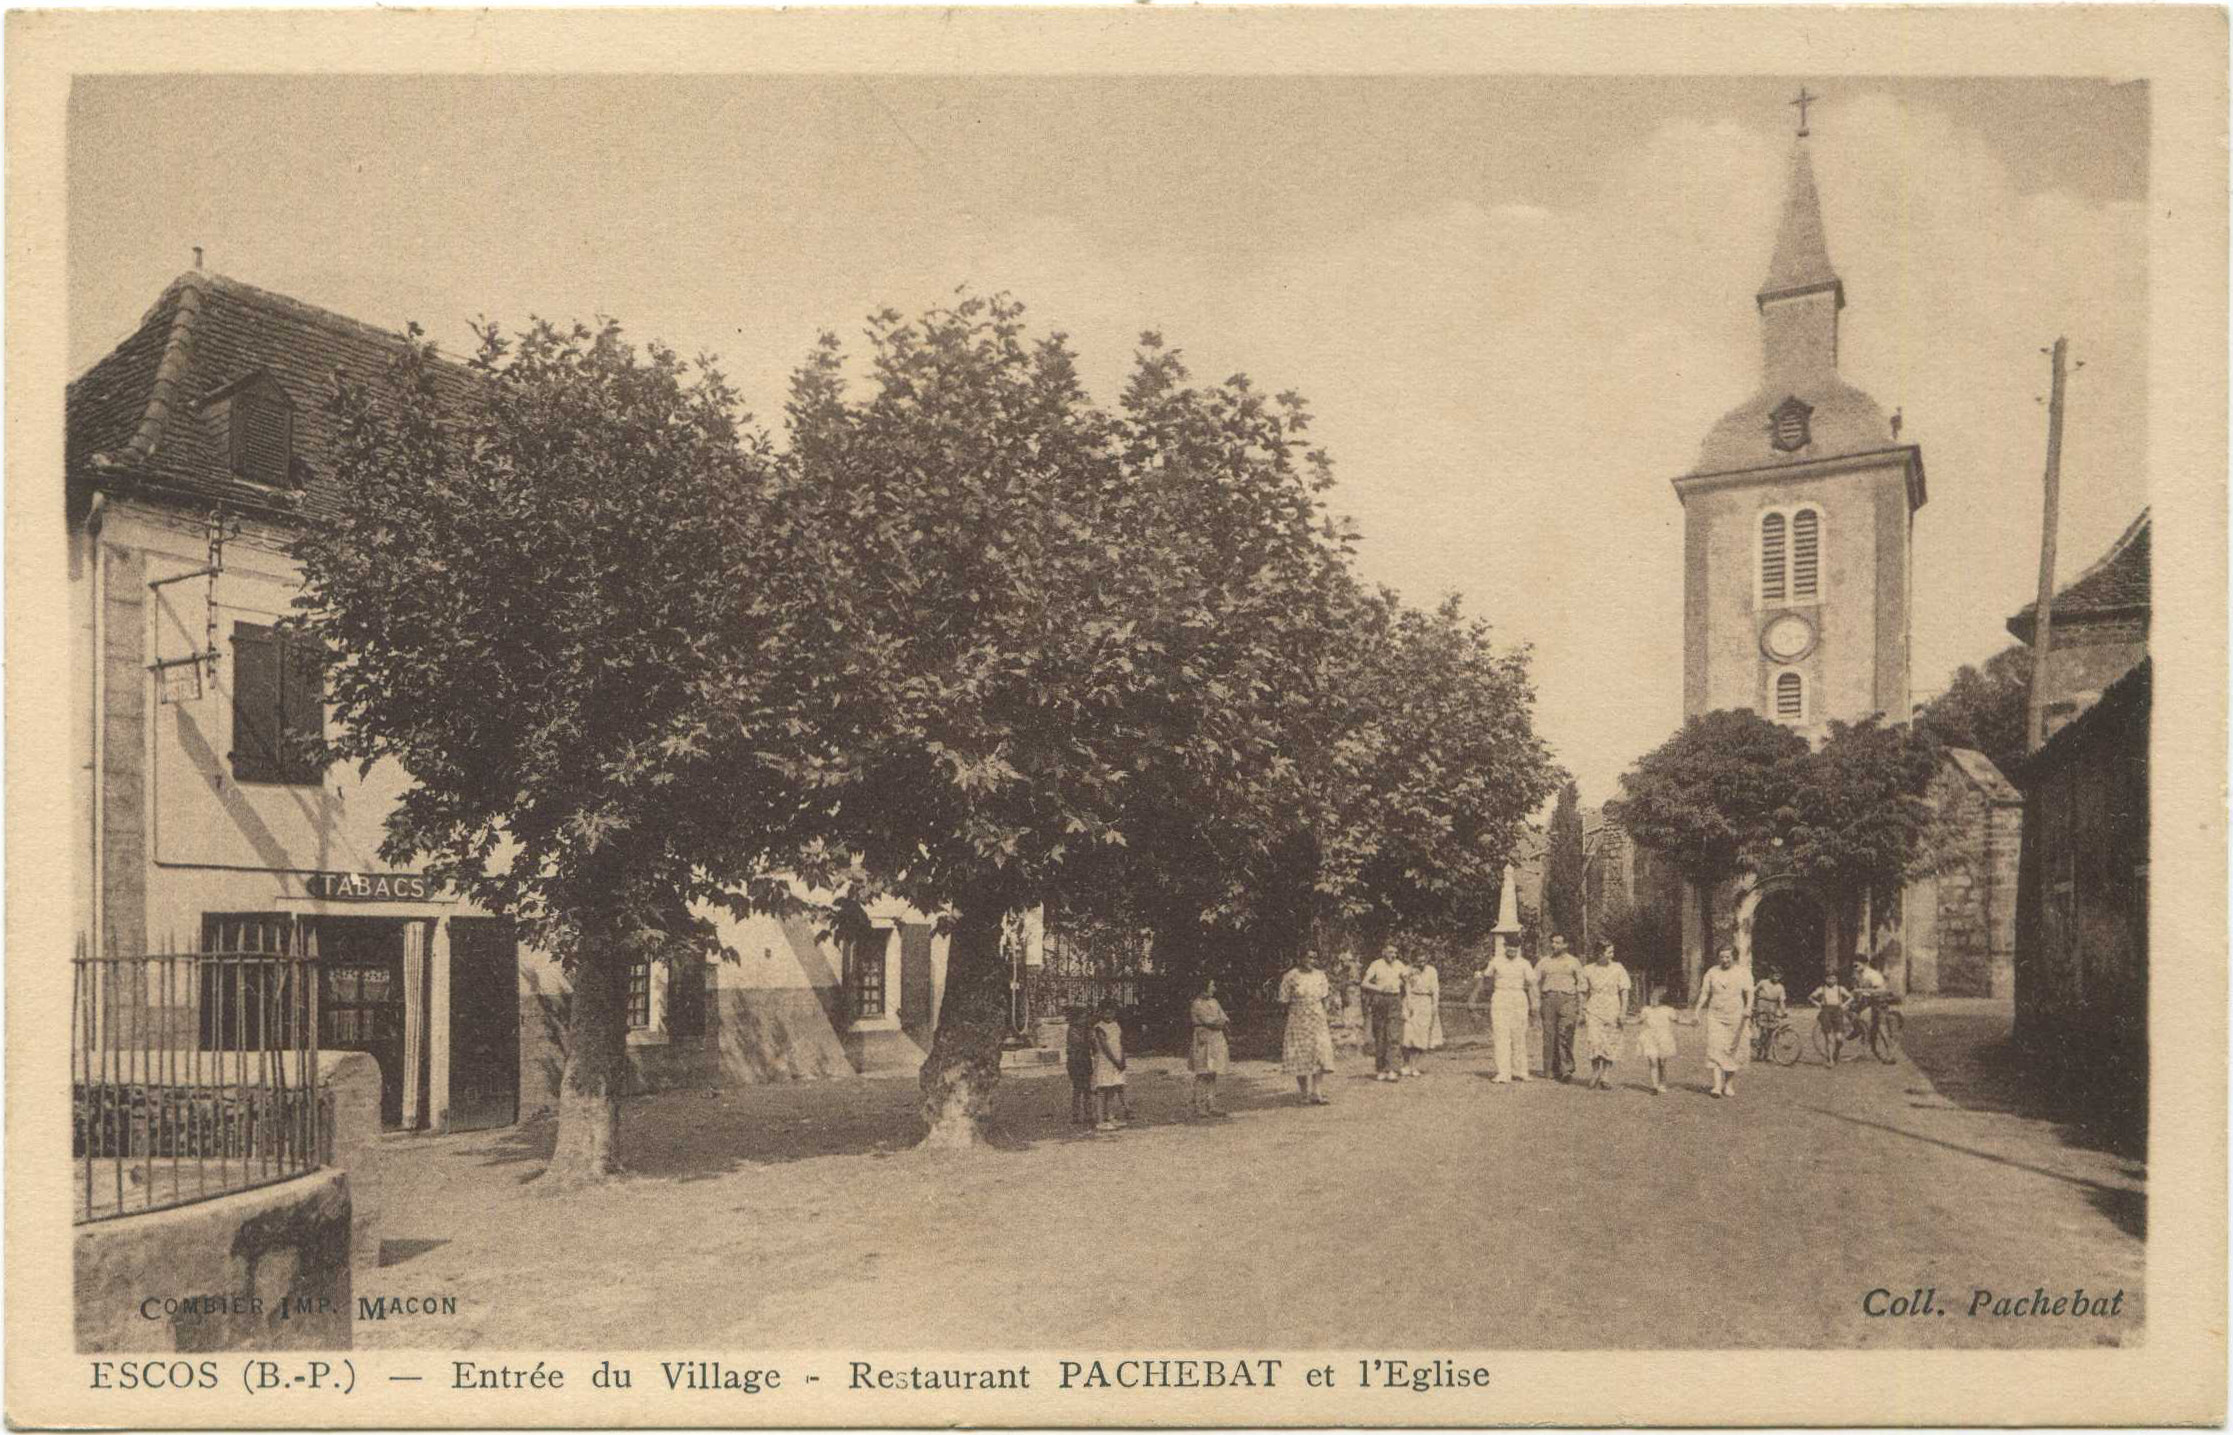 Escos - Entrée du Village - Restaurant PACHEBAT et l'Eglise